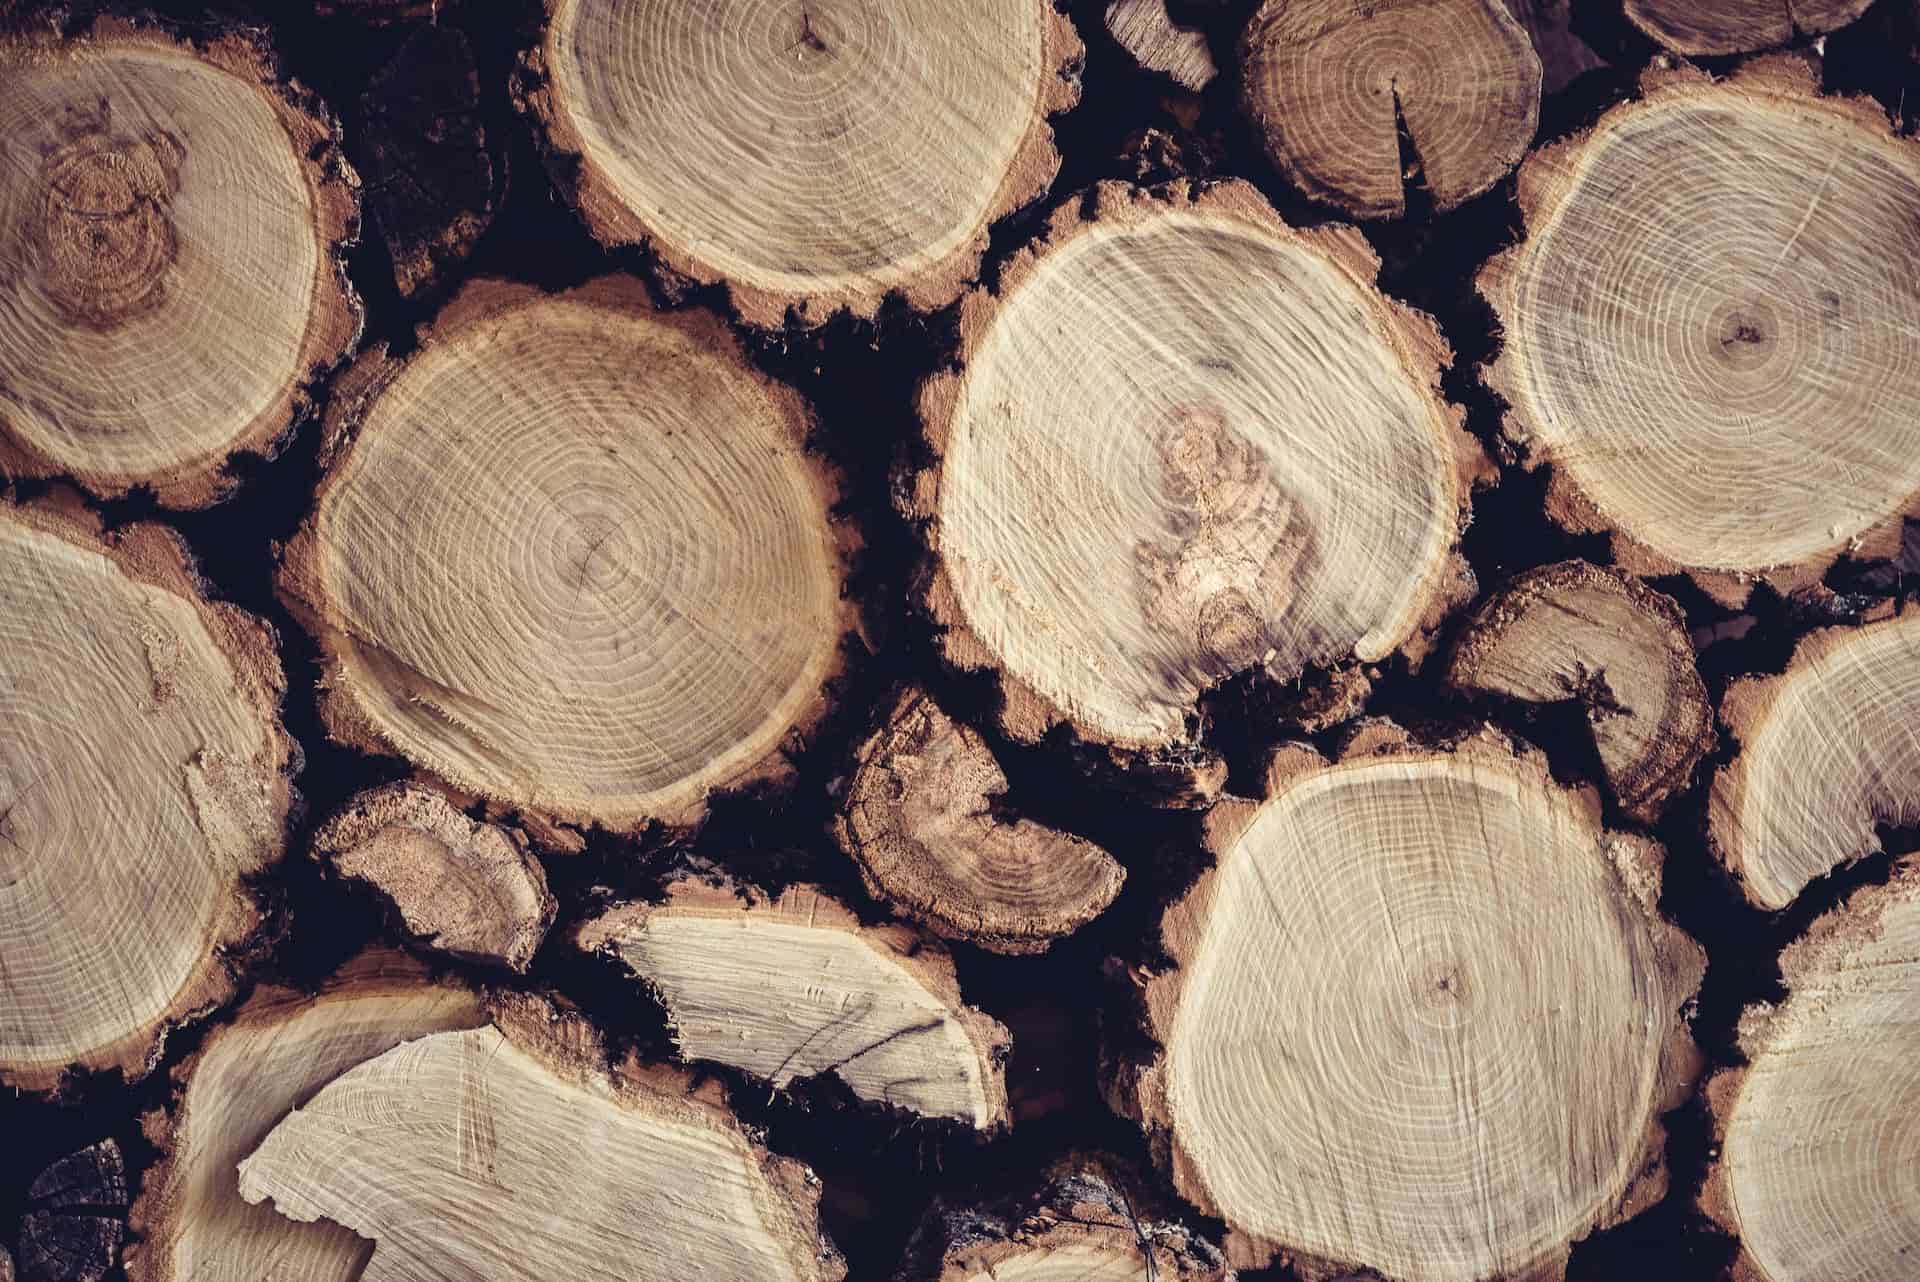 Le chêne est une essence de bois à privilégier pour se chauffer